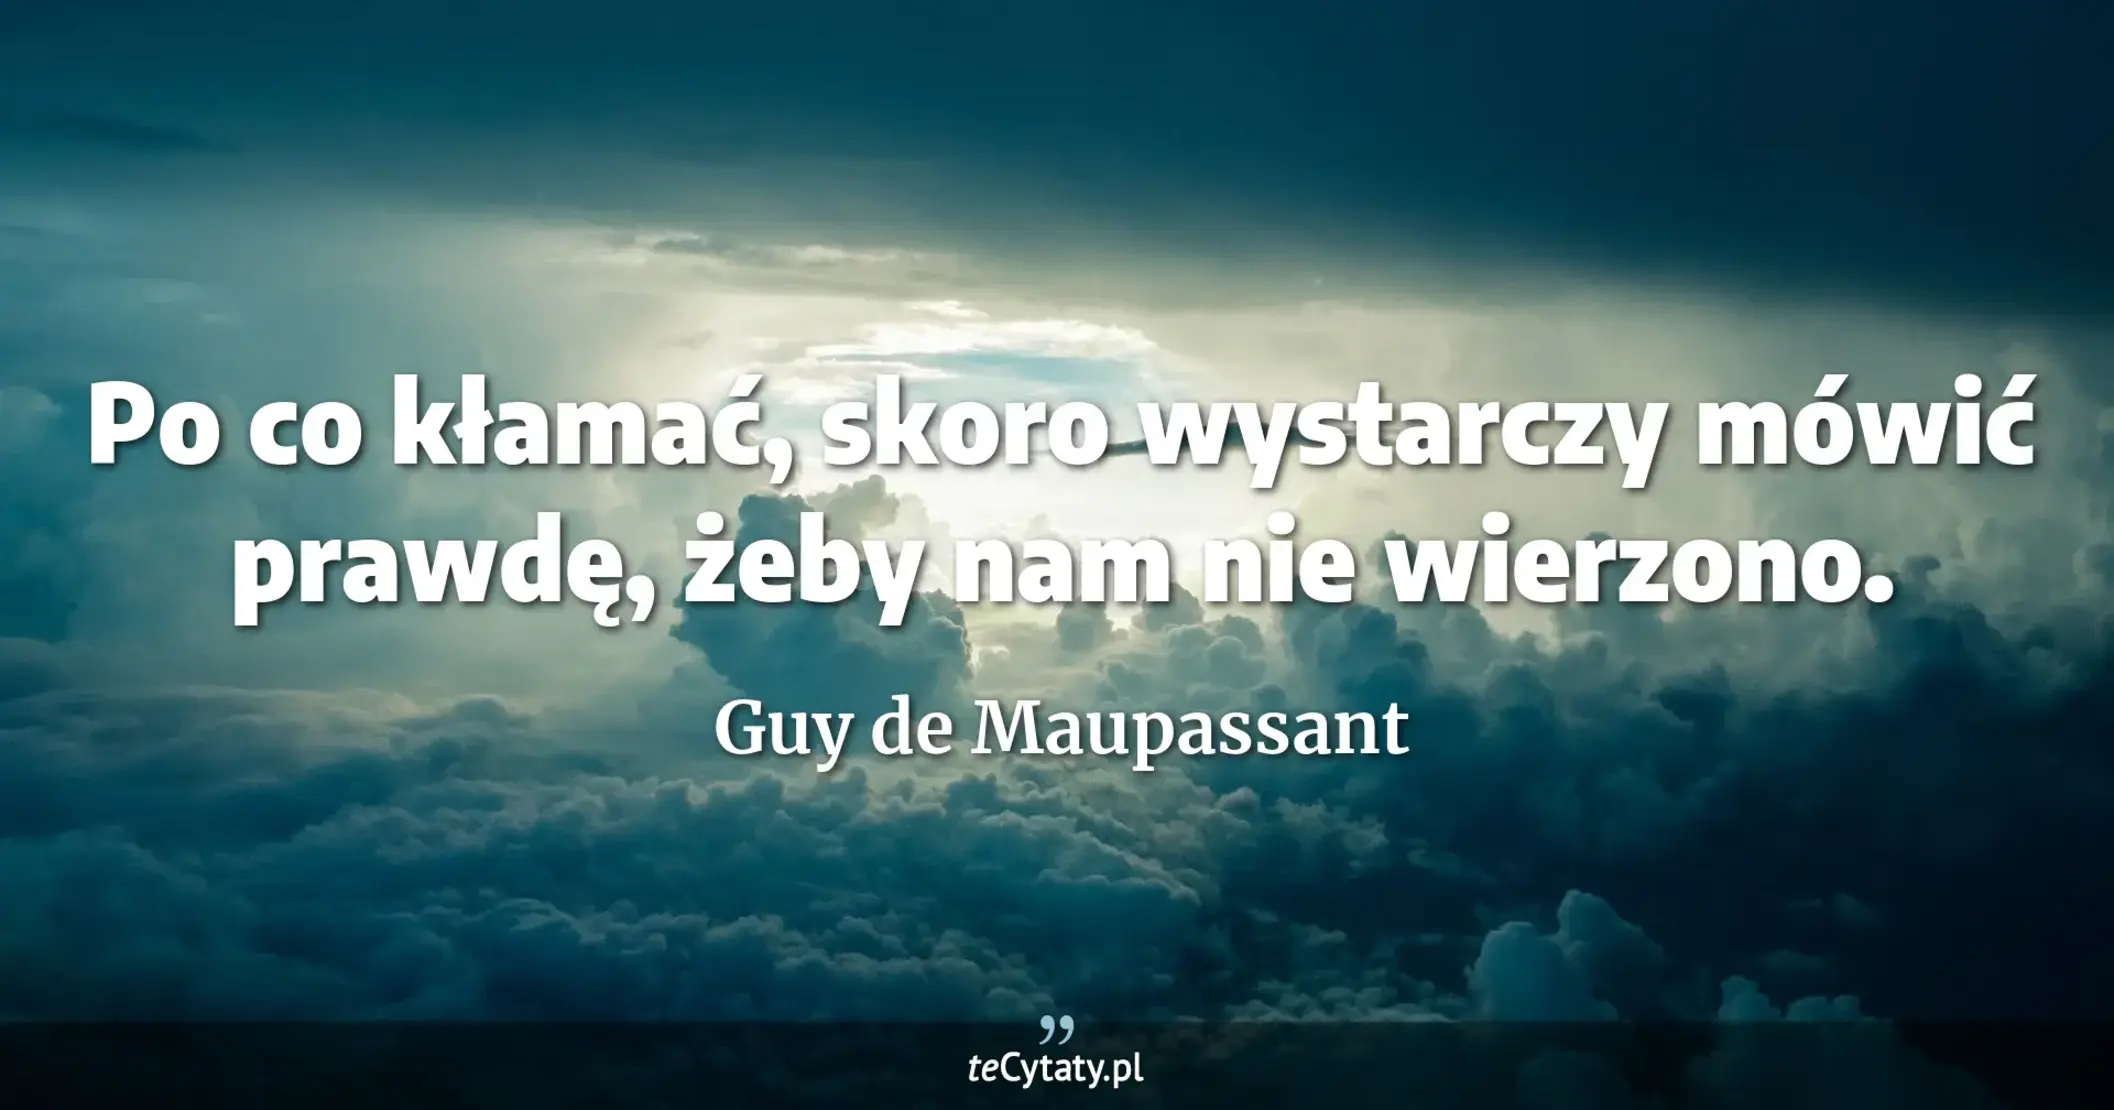 Po co kłamać, skoro wystarczy mówić prawdę, żeby nam nie wierzono. - Guy de Maupassant